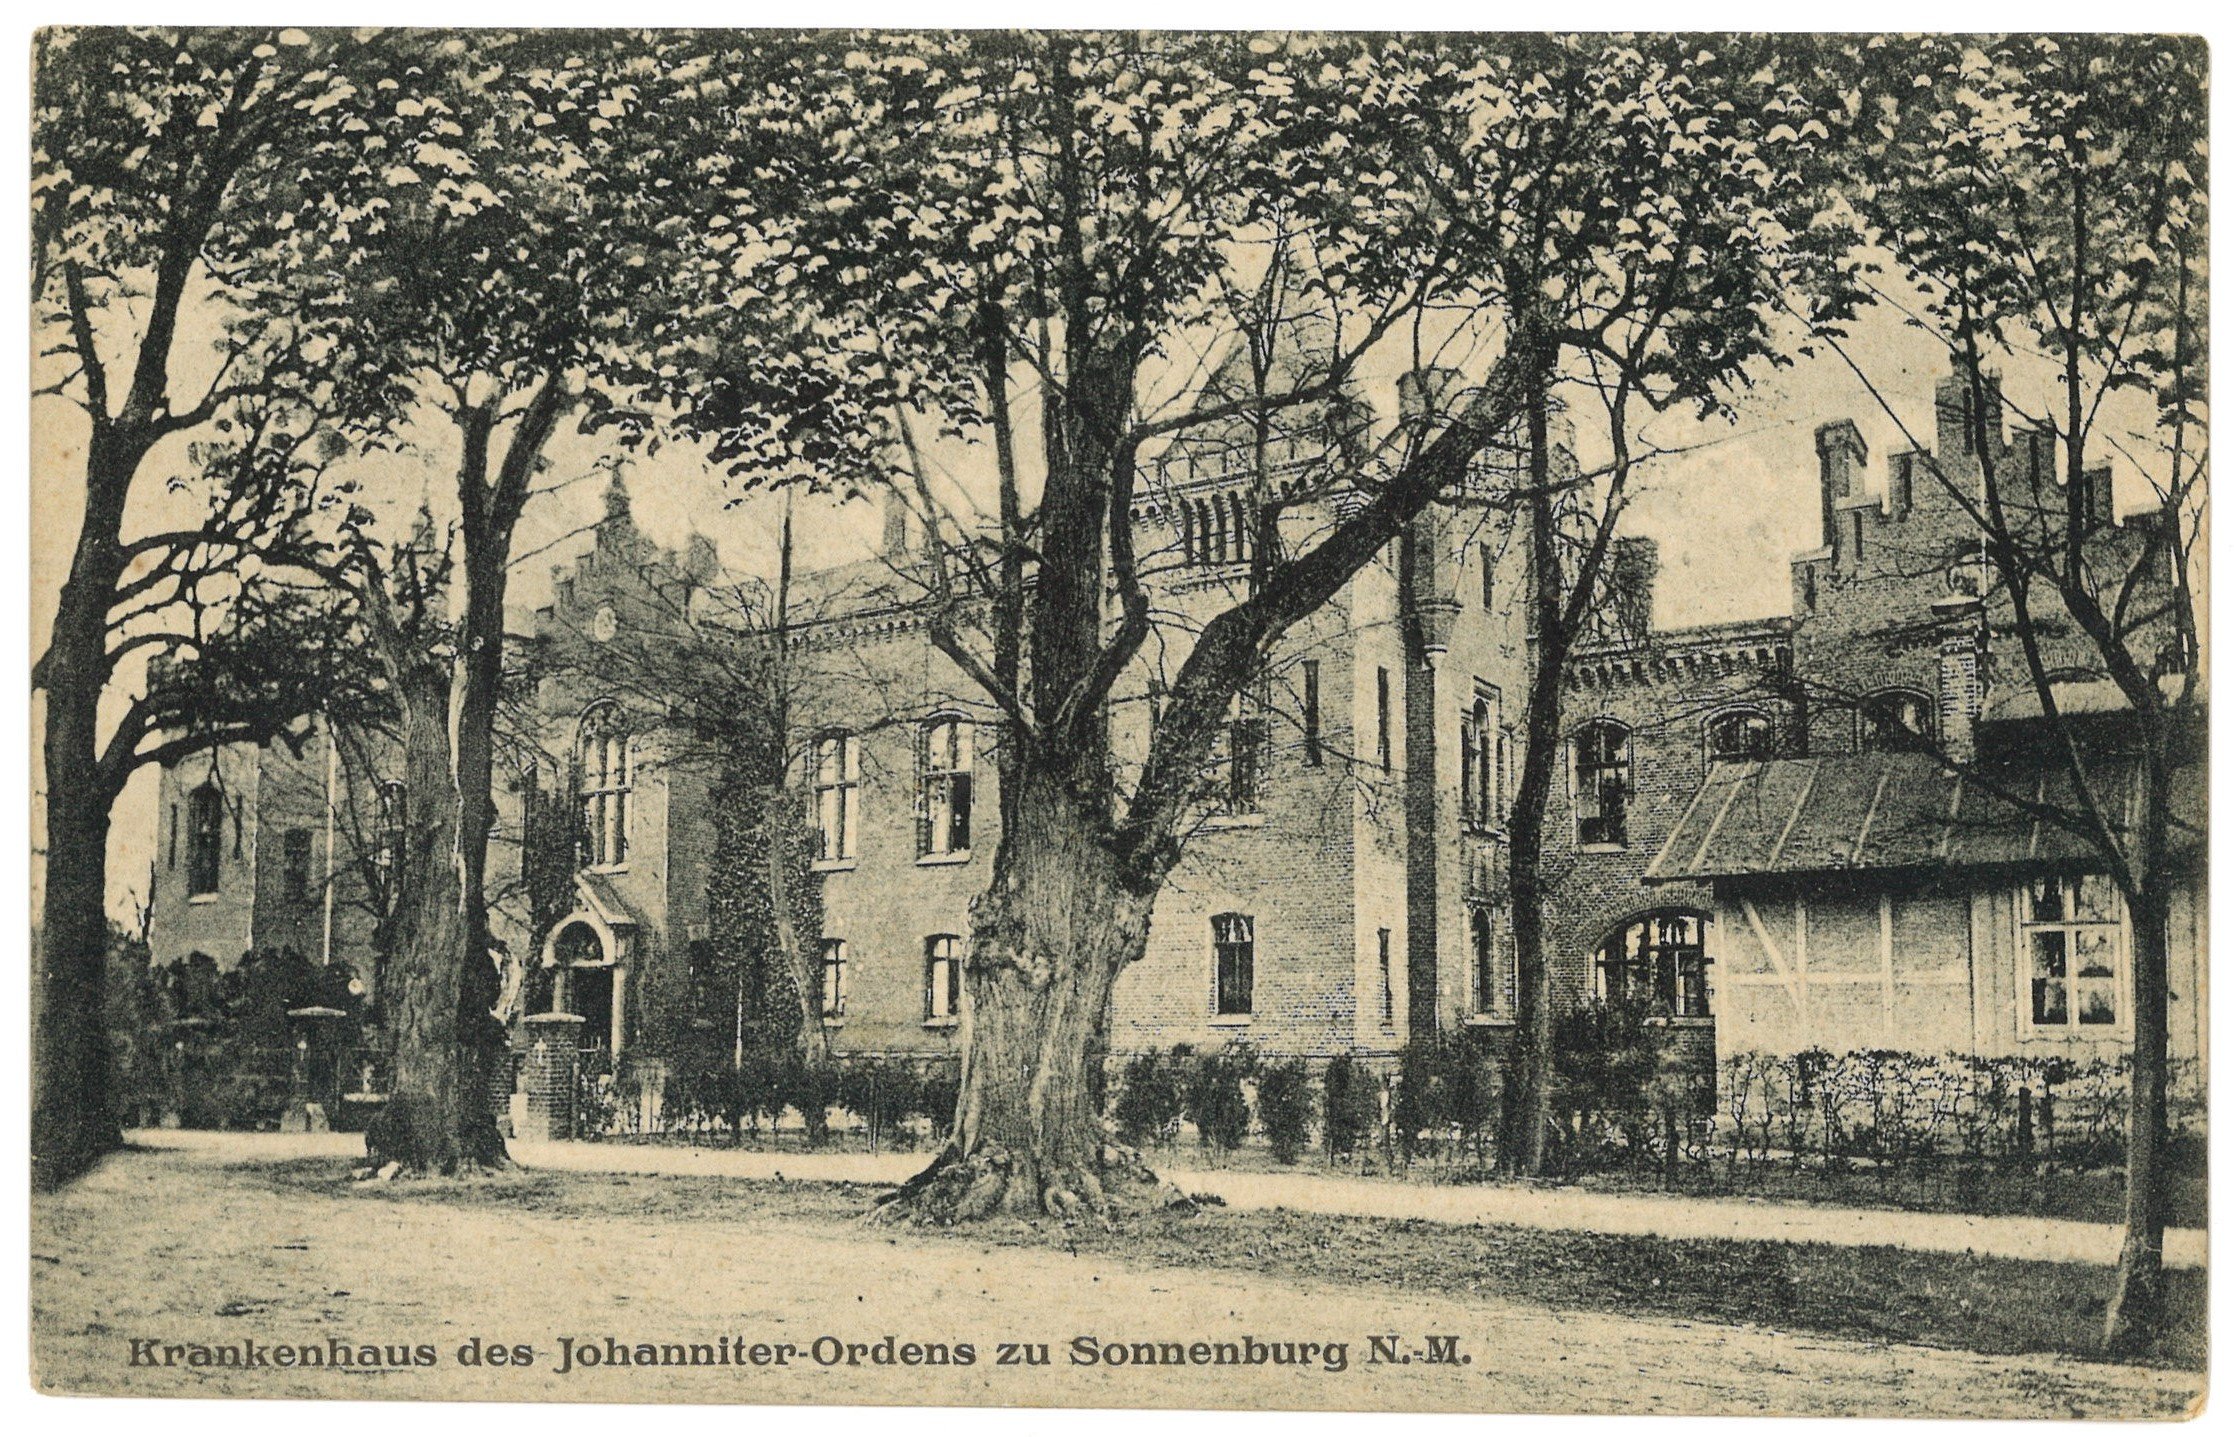 Sonnenburg (Neumark) [Słońsk]: Johanniterordens-Krankenhaus (Landesgeschichtliche Vereinigung für die Mark Brandenburg e.V., Archiv CC BY)